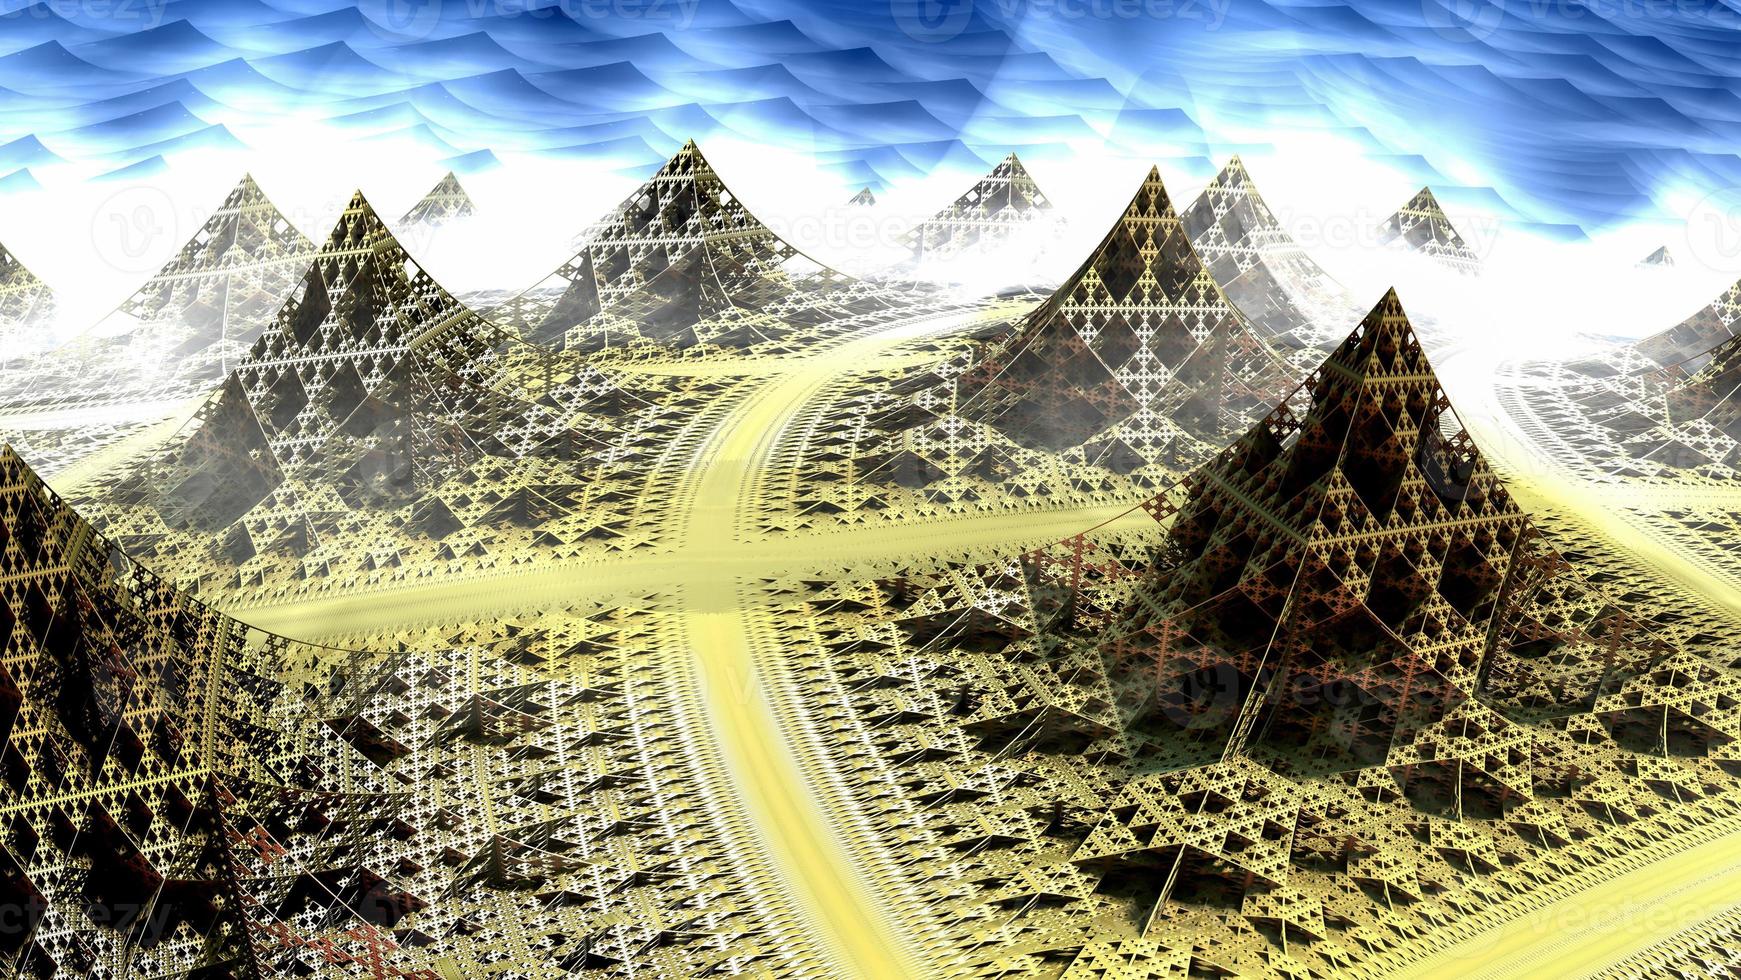 diseño fractal generado por ordenador abstracto. Ilustración de extraterrestres 3d de una hermosa torre de pirámide múltiple fractal mandelbrot matemática infinita foto